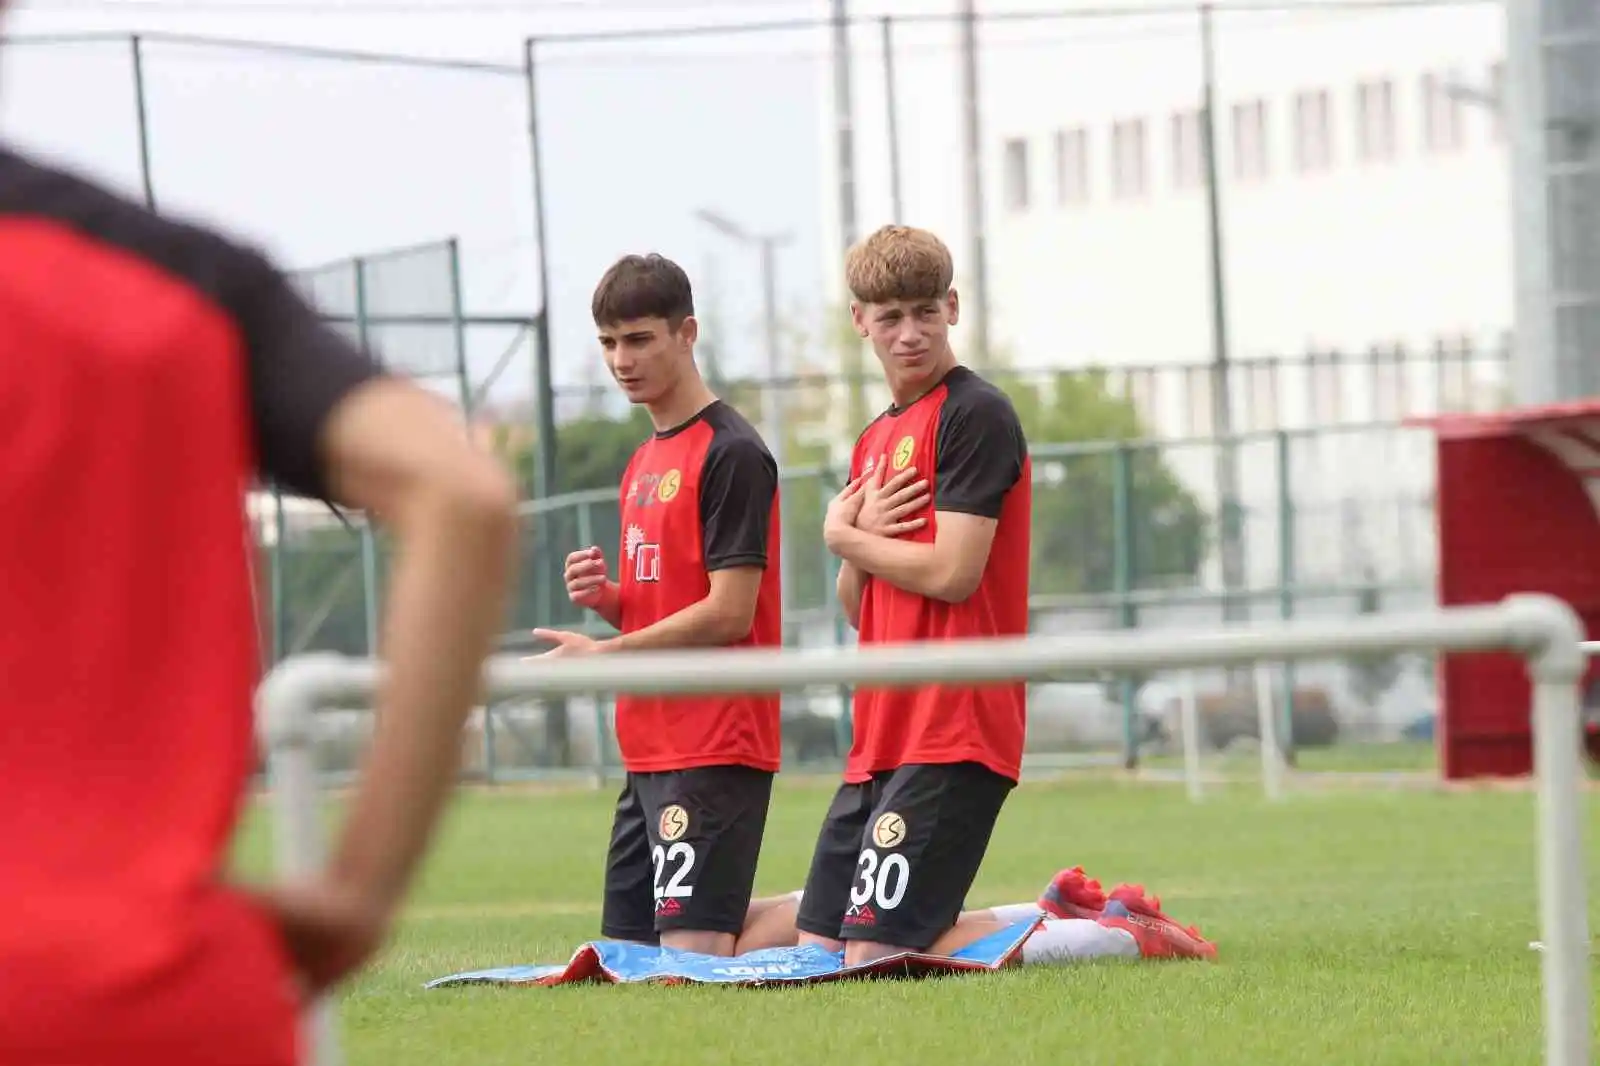 Eskişehirsporlu oyuncular aktivasyon ve rejenerasyon çalışmaları ile antrenmanlarını tamamladı
